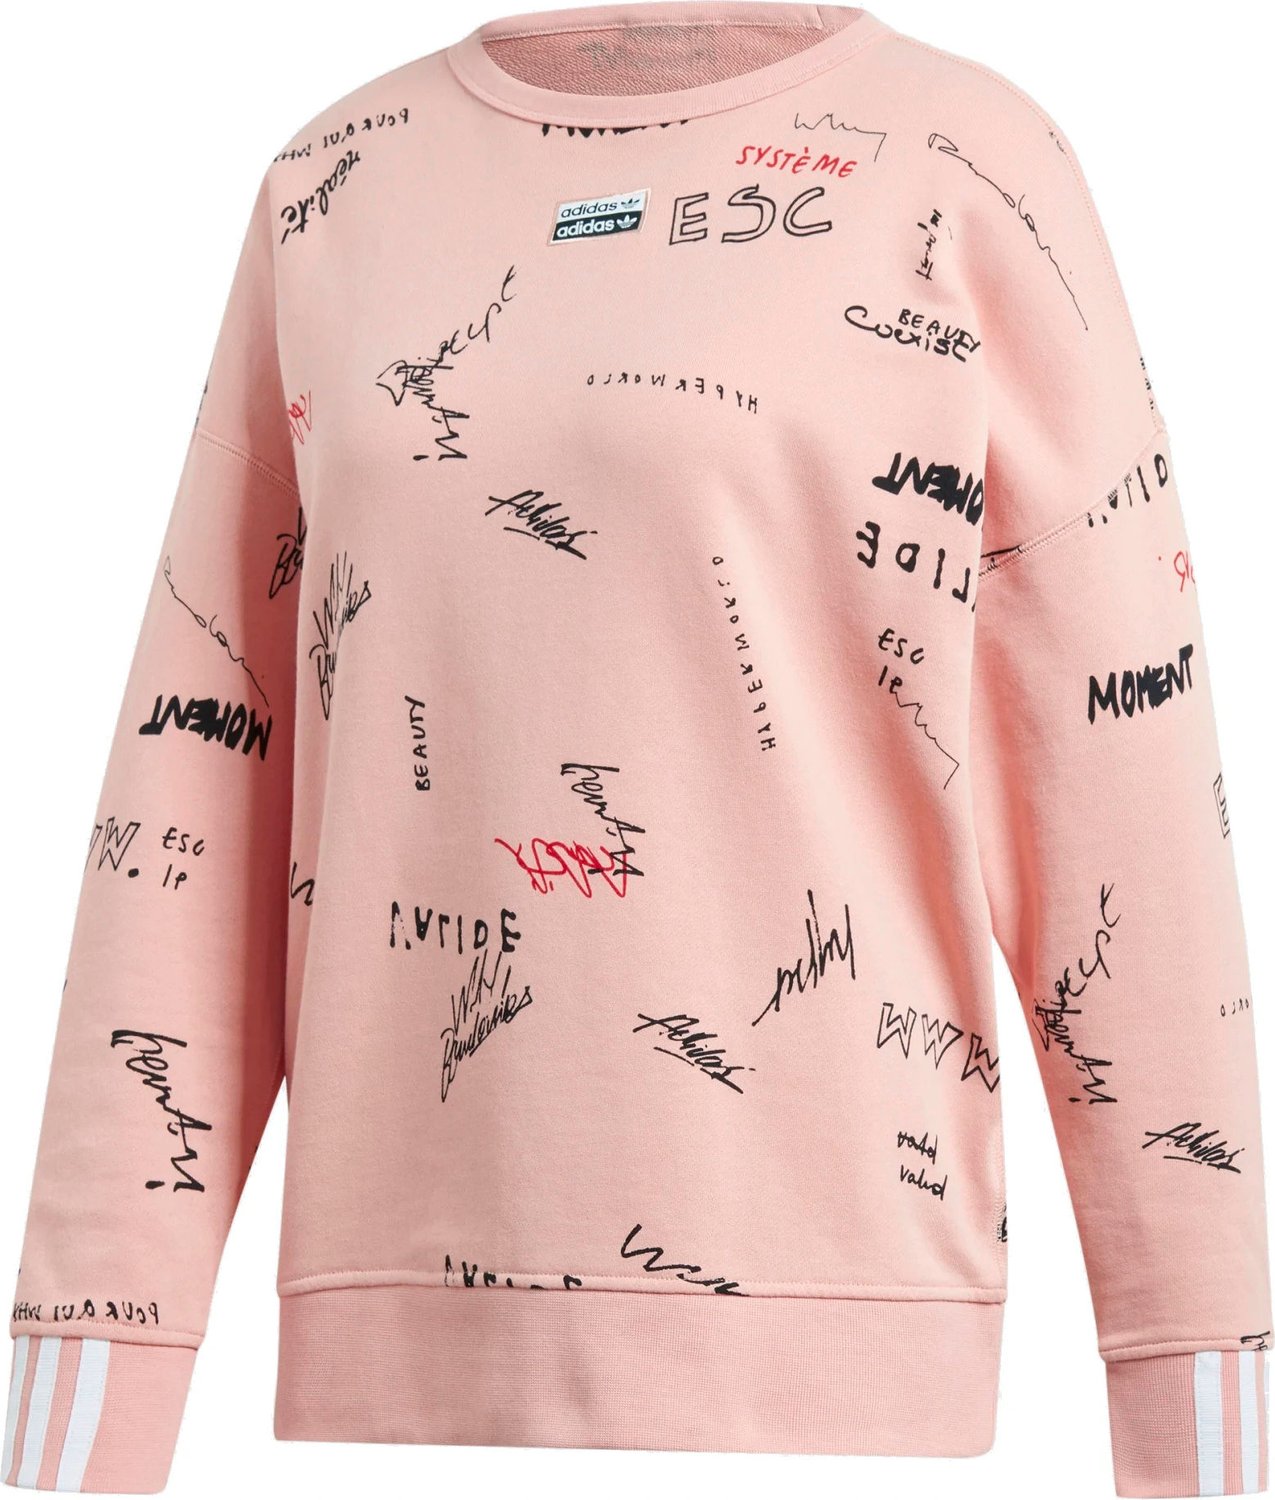 Bluza Sweatshirt Adidas Originals - jasny róż/nadruk